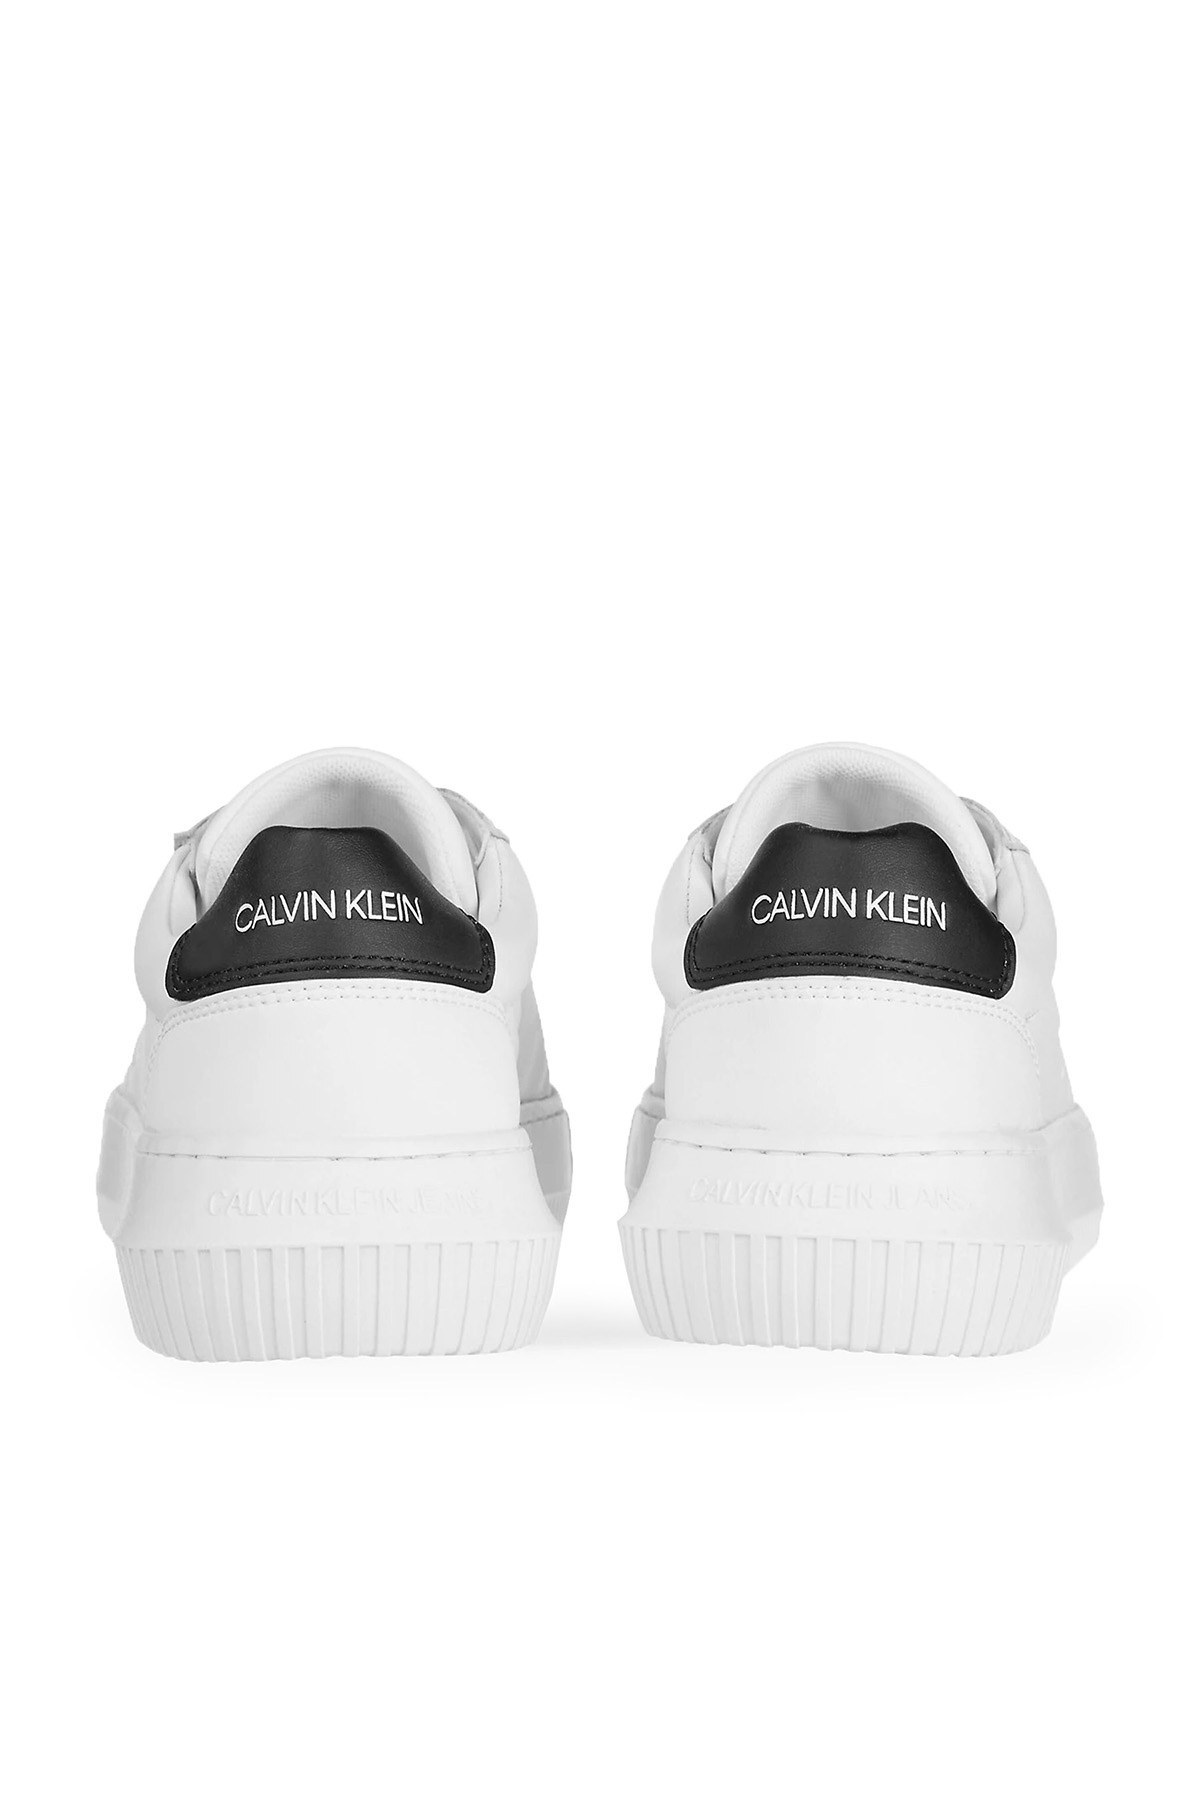 Calvin Klein Sneaker Kadın Ayakkabı YW0YW00066 YAF BEYAZ